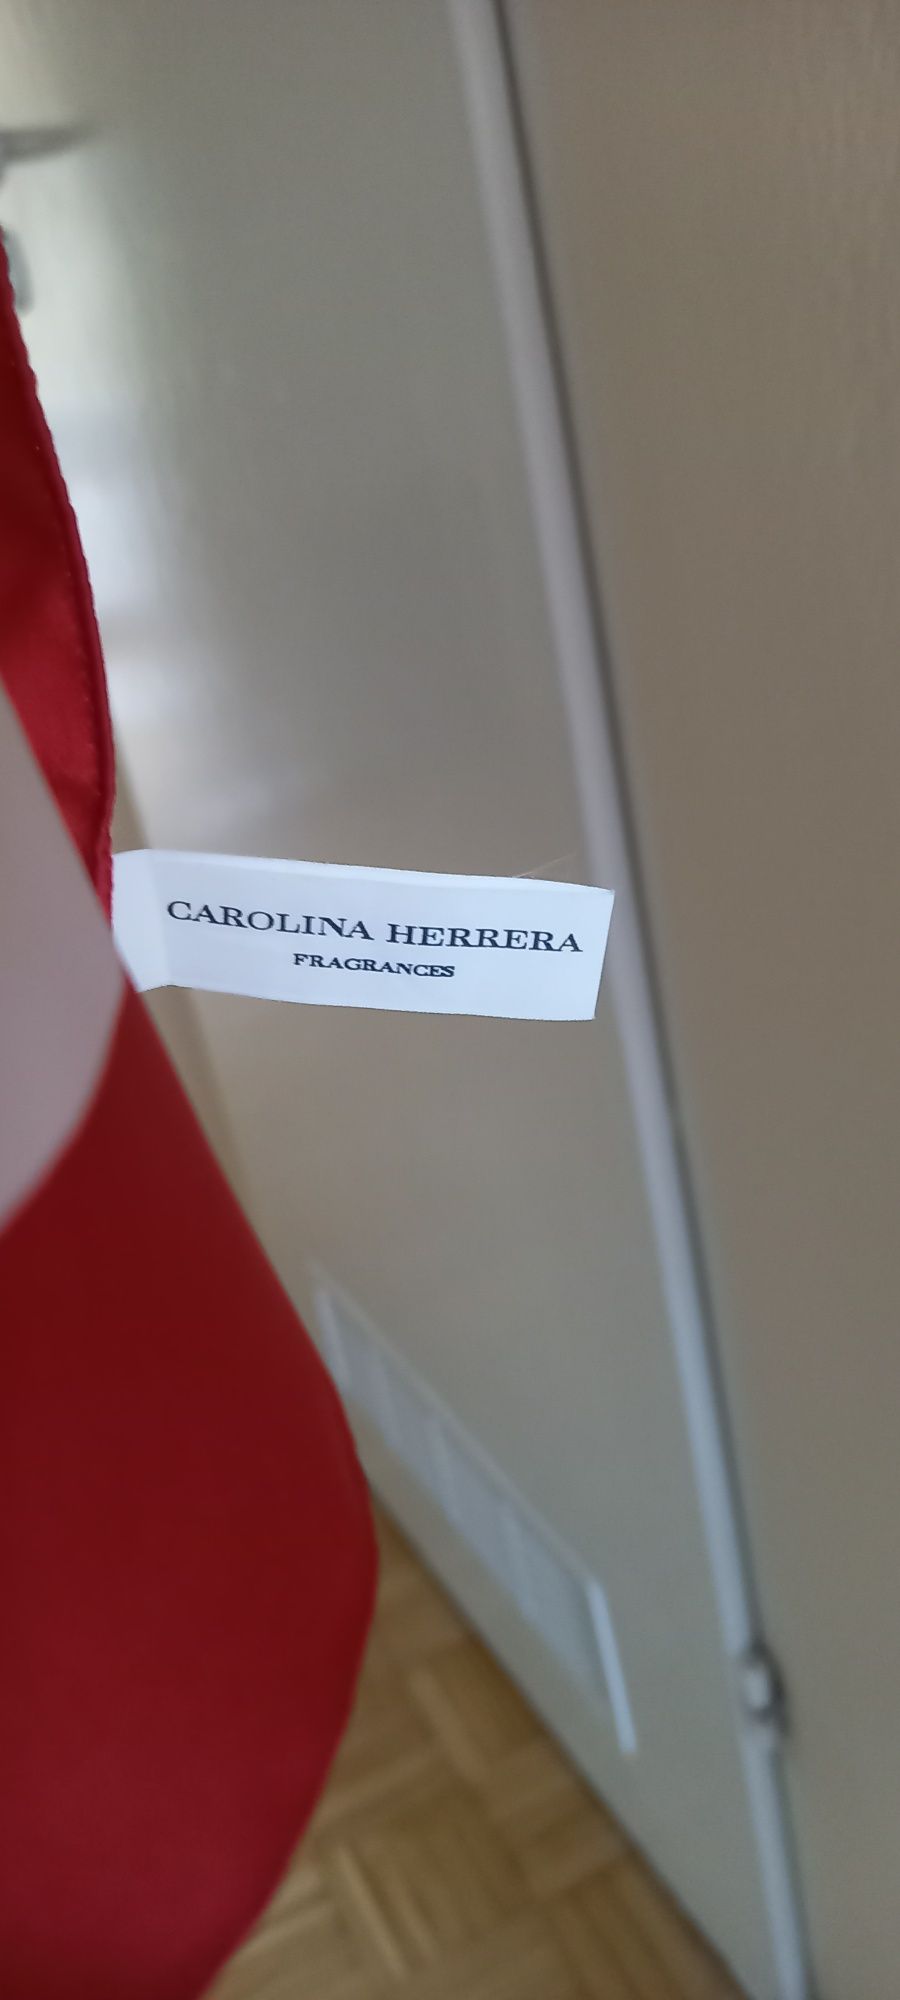 Apaszka z logo Carolina Herrera. 100% polyester. W dobrym stanie